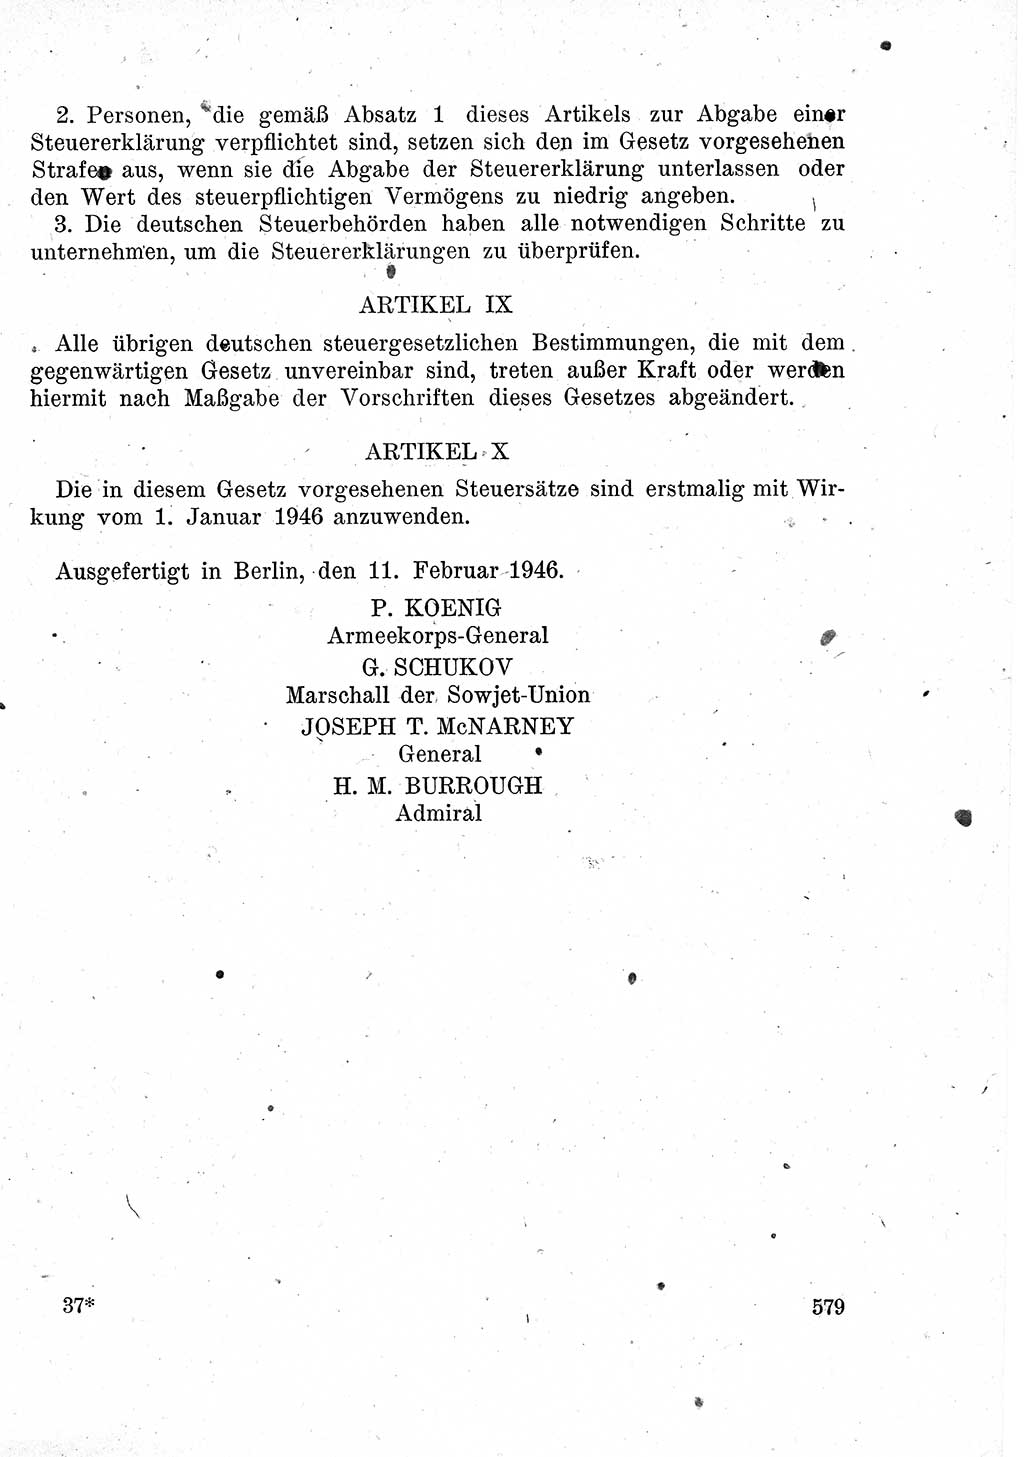 Das Recht der Besatzungsmacht (Deutschland), Proklamationen, Deklerationen, Verordnungen, Gesetze und Bekanntmachungen 1947, Seite 579 (R. Bes. Dtl. 1947, S. 579)